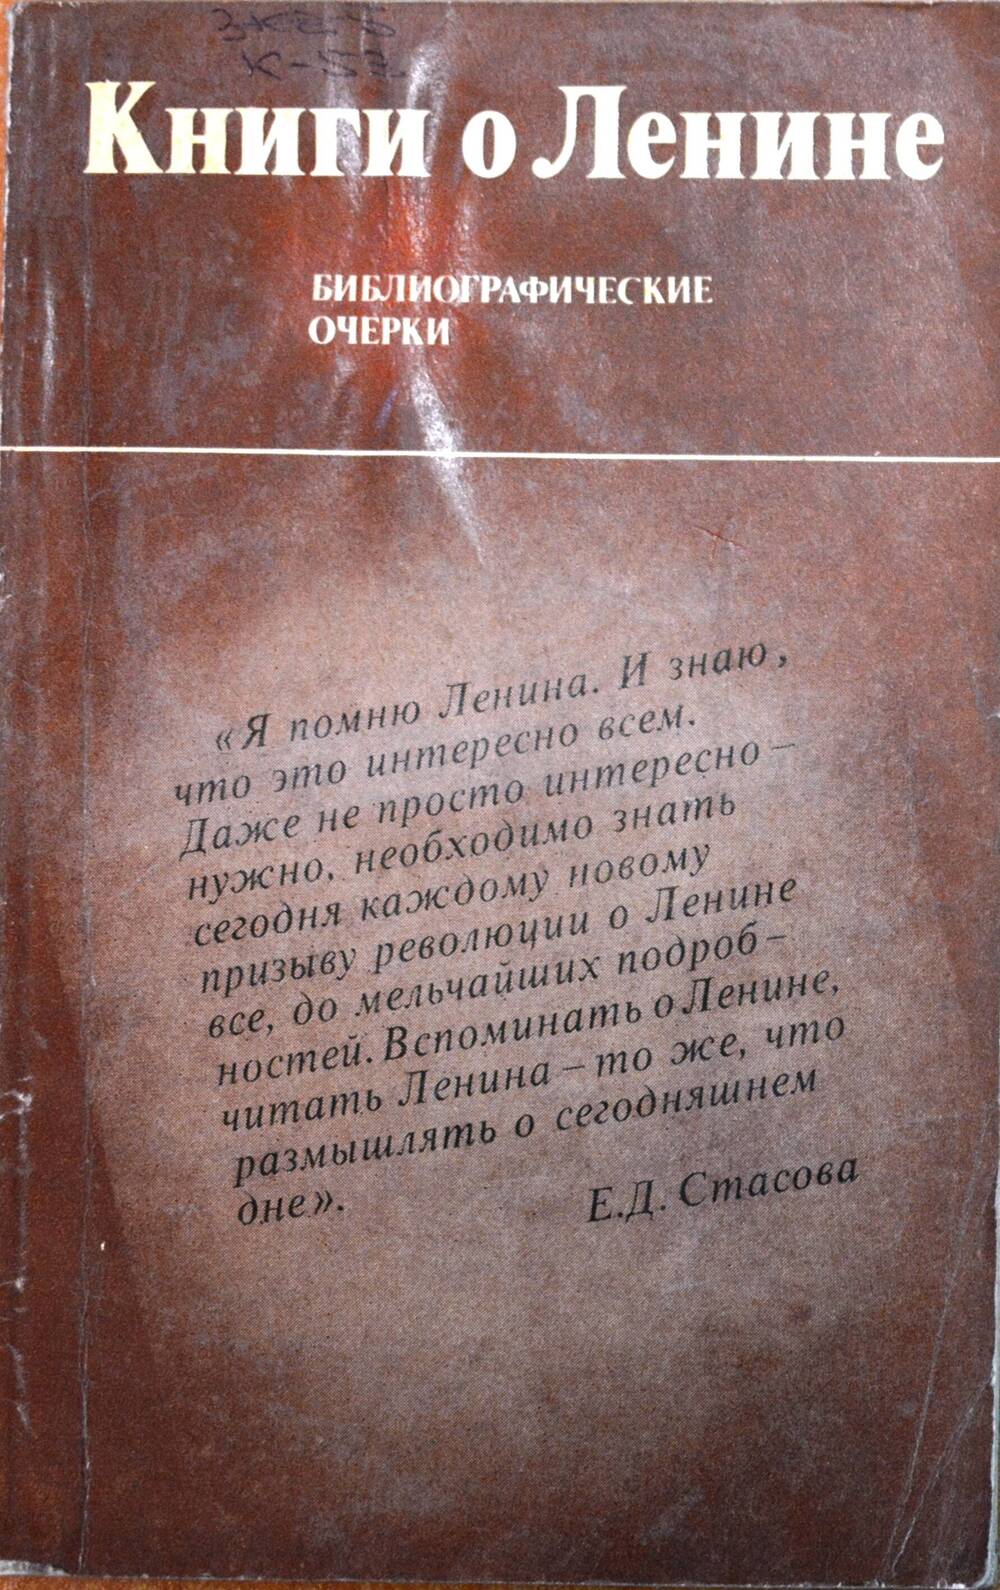 Книга – «Книги о Ленине». Биографические очерки.